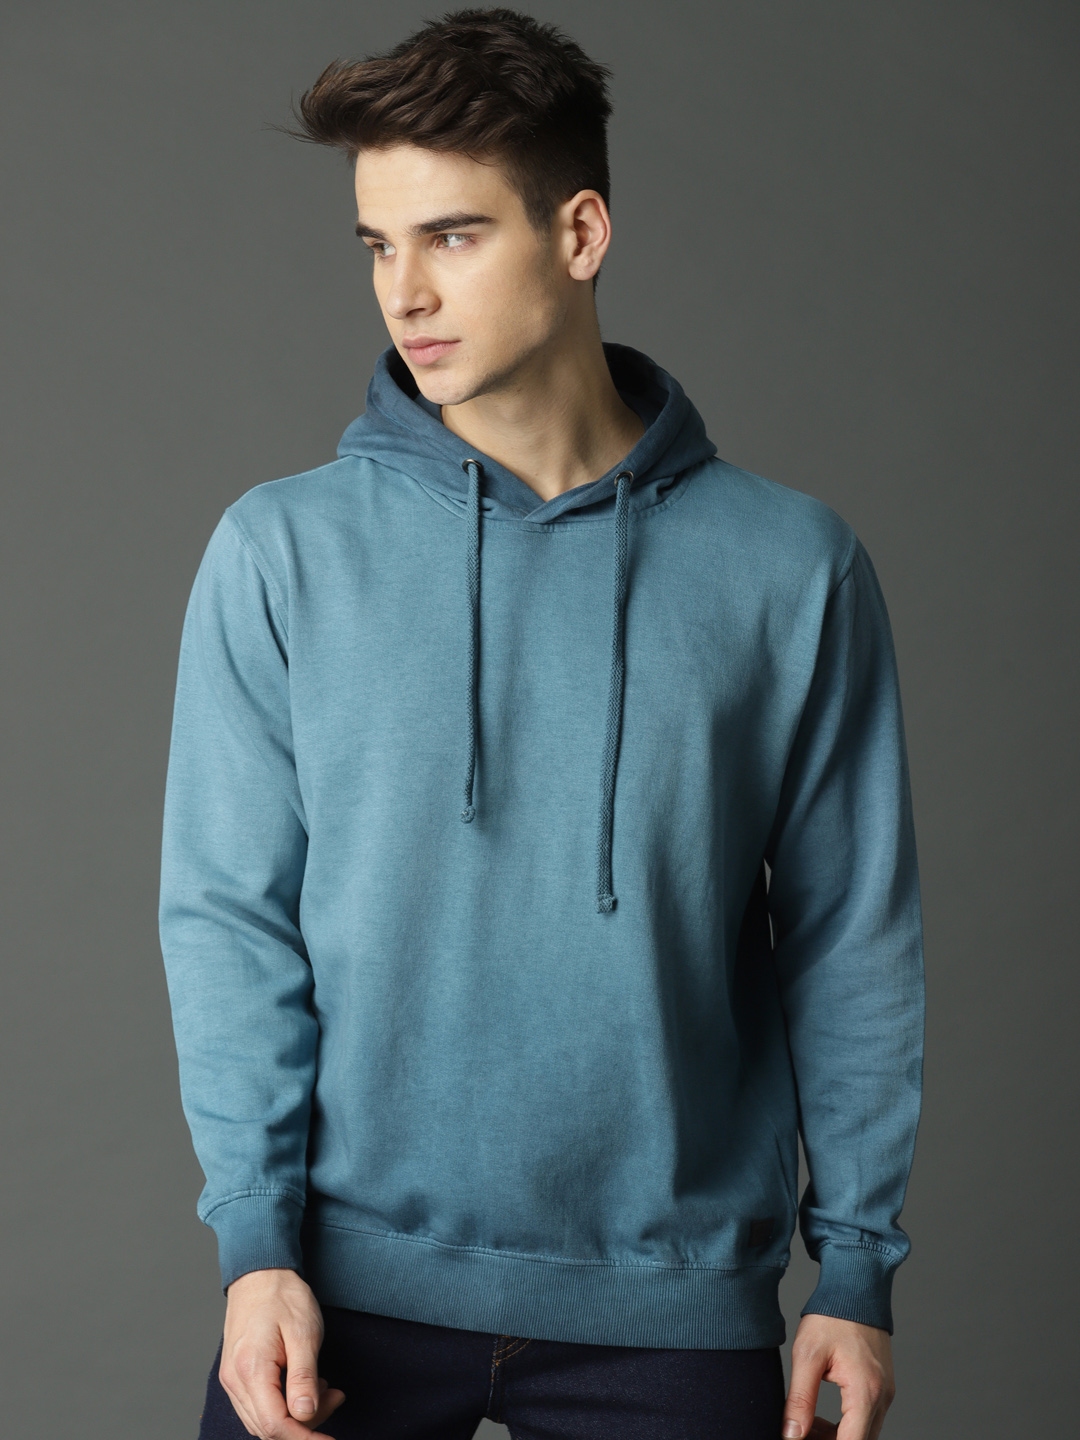 Buy Roadster Men Blue Solid Hooded Sweatshirt - Sweatshirts for Men ...